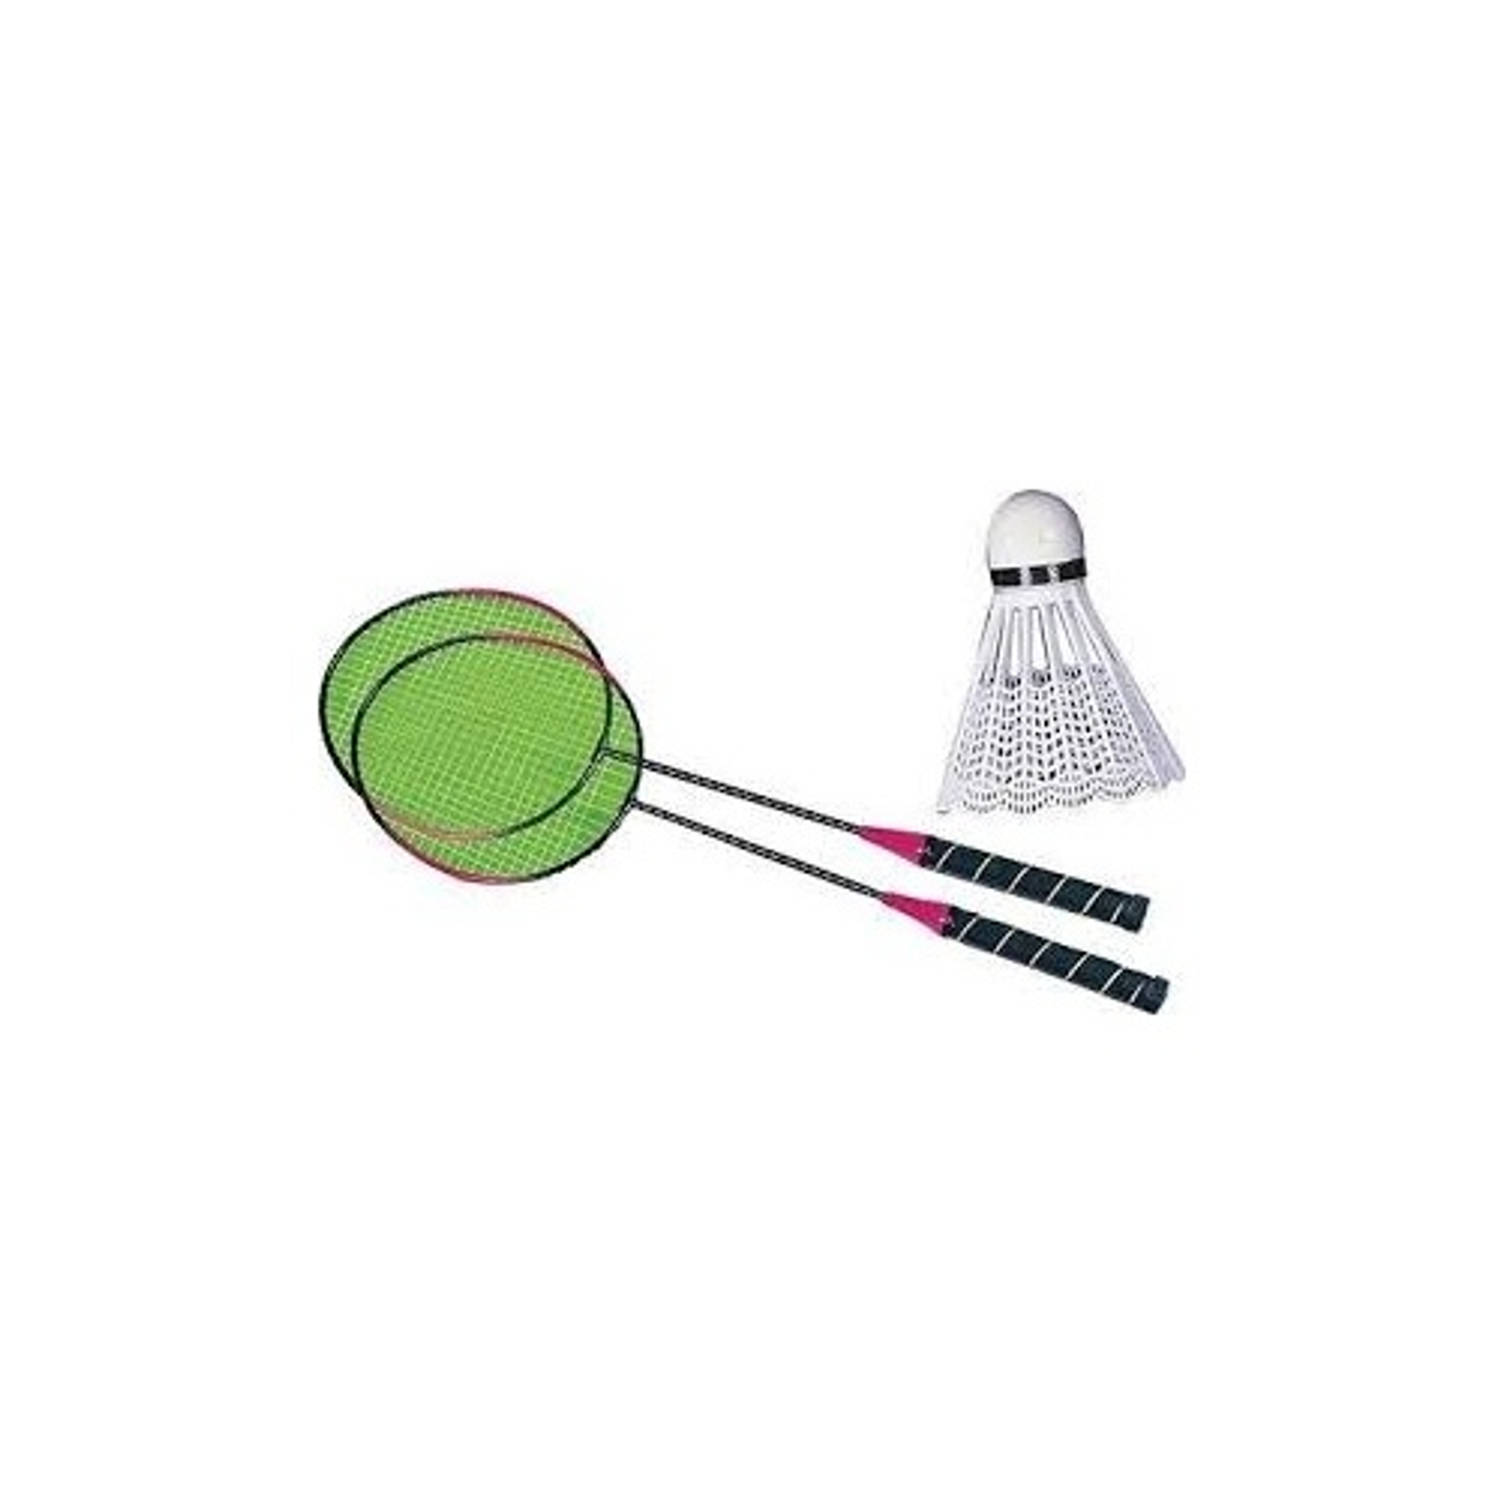 Toyrific Badmintonset Groen/rood 2 Stuks